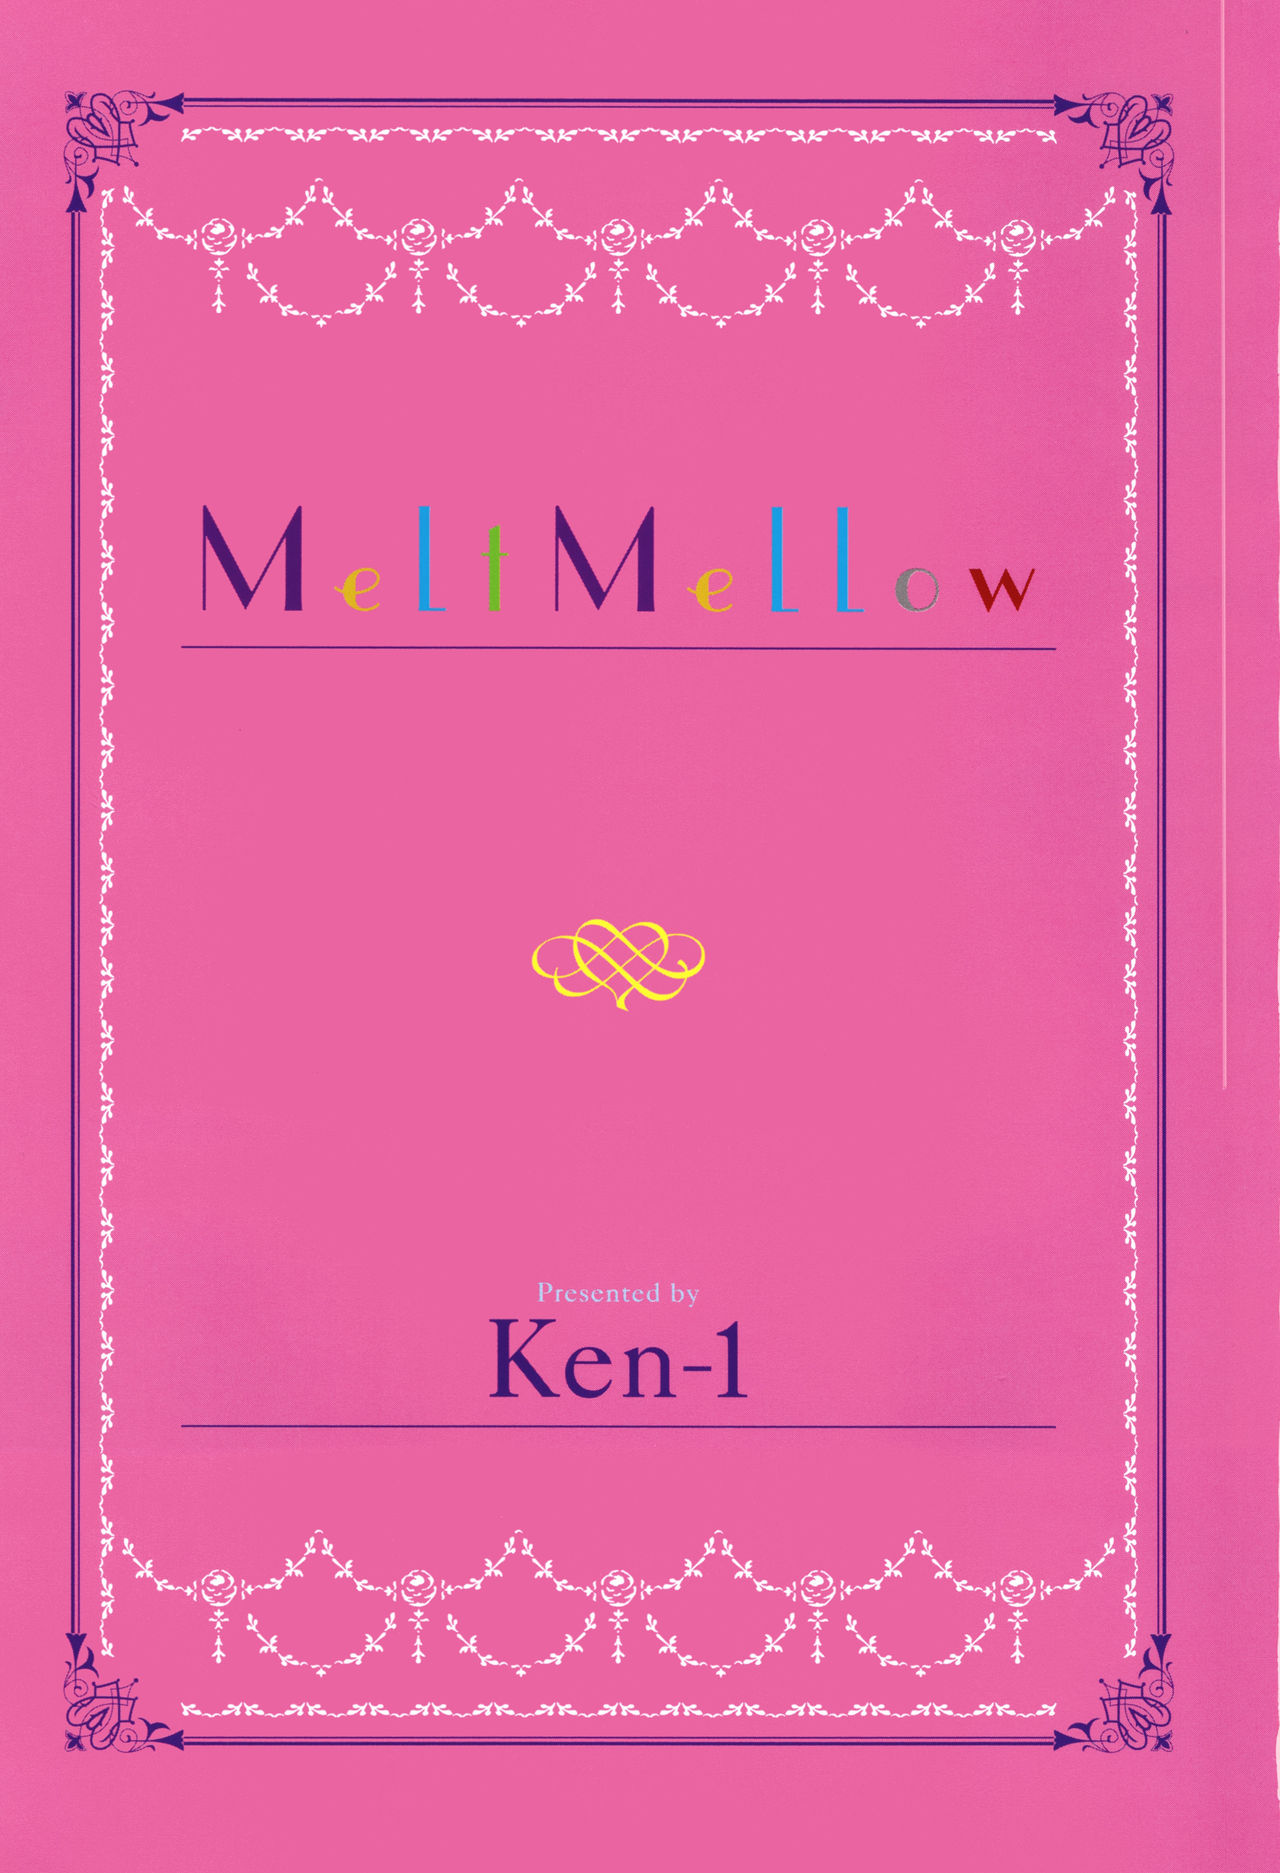 [Ken-1] Melt Mellow + 4Pリーフレット